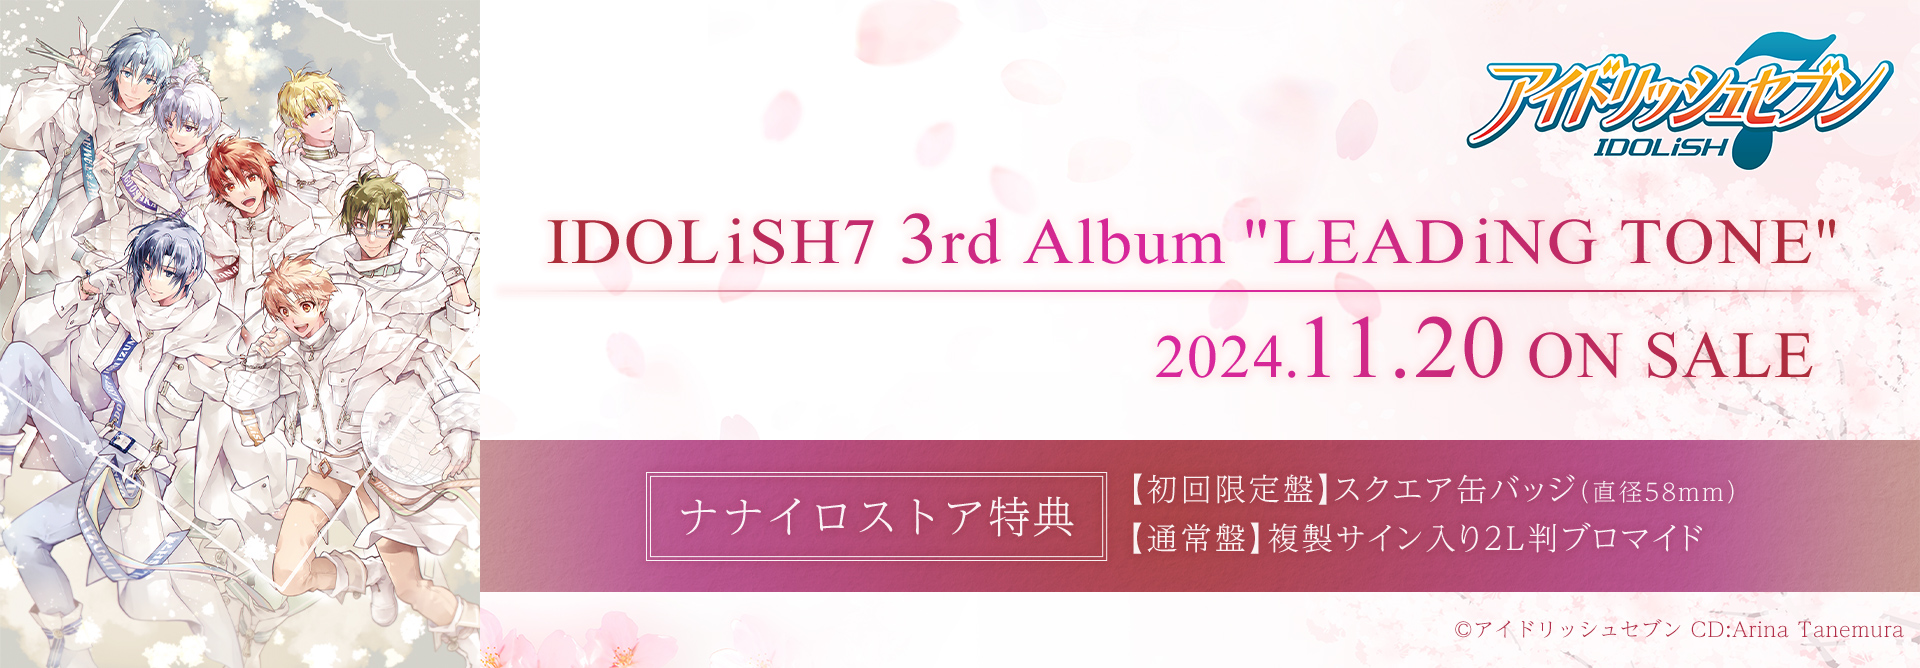 IDOLiSH7 3rd Album “LEADiNG TONE